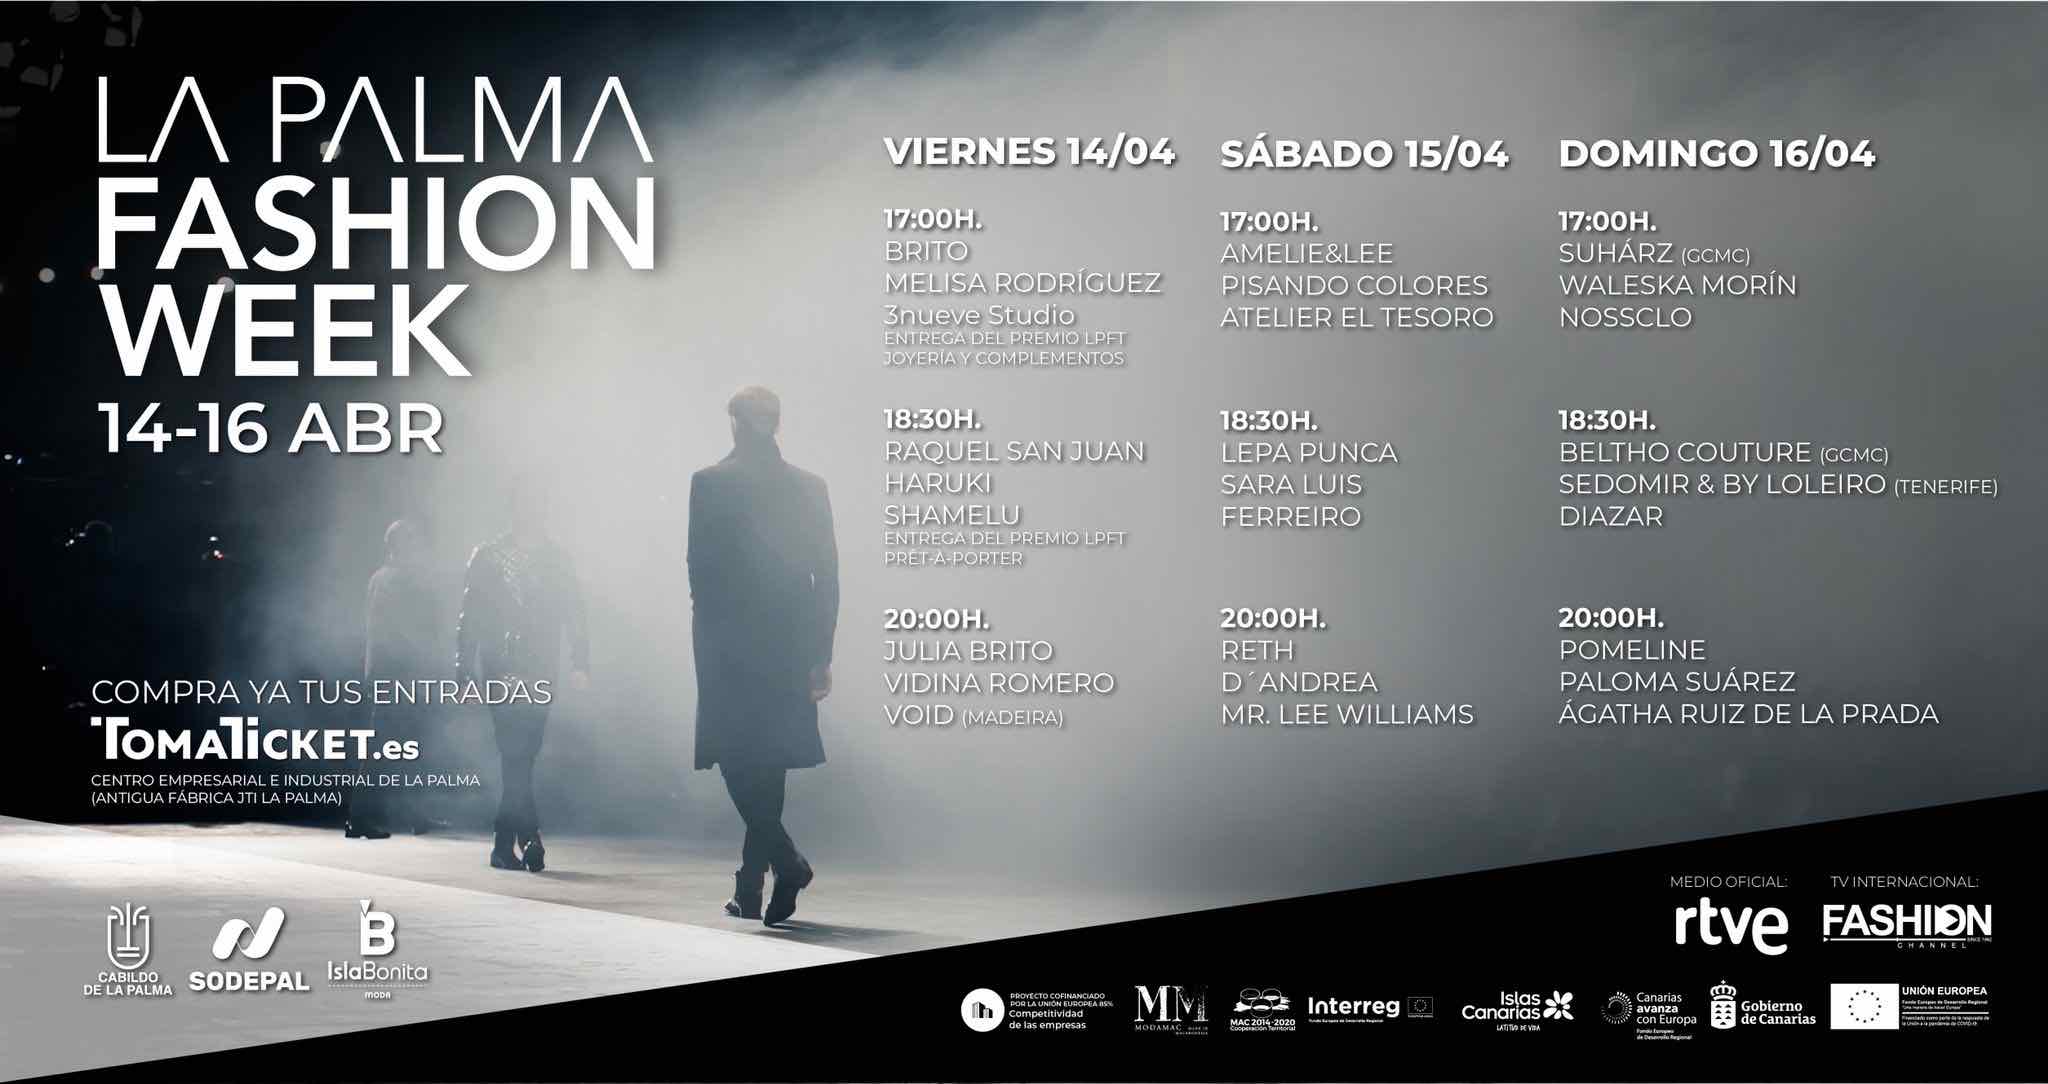 Isla Bonita Moda anuncia el calendario definitivo de La Palma Fashion Week y pone a la venta las entradas para asistir al evento